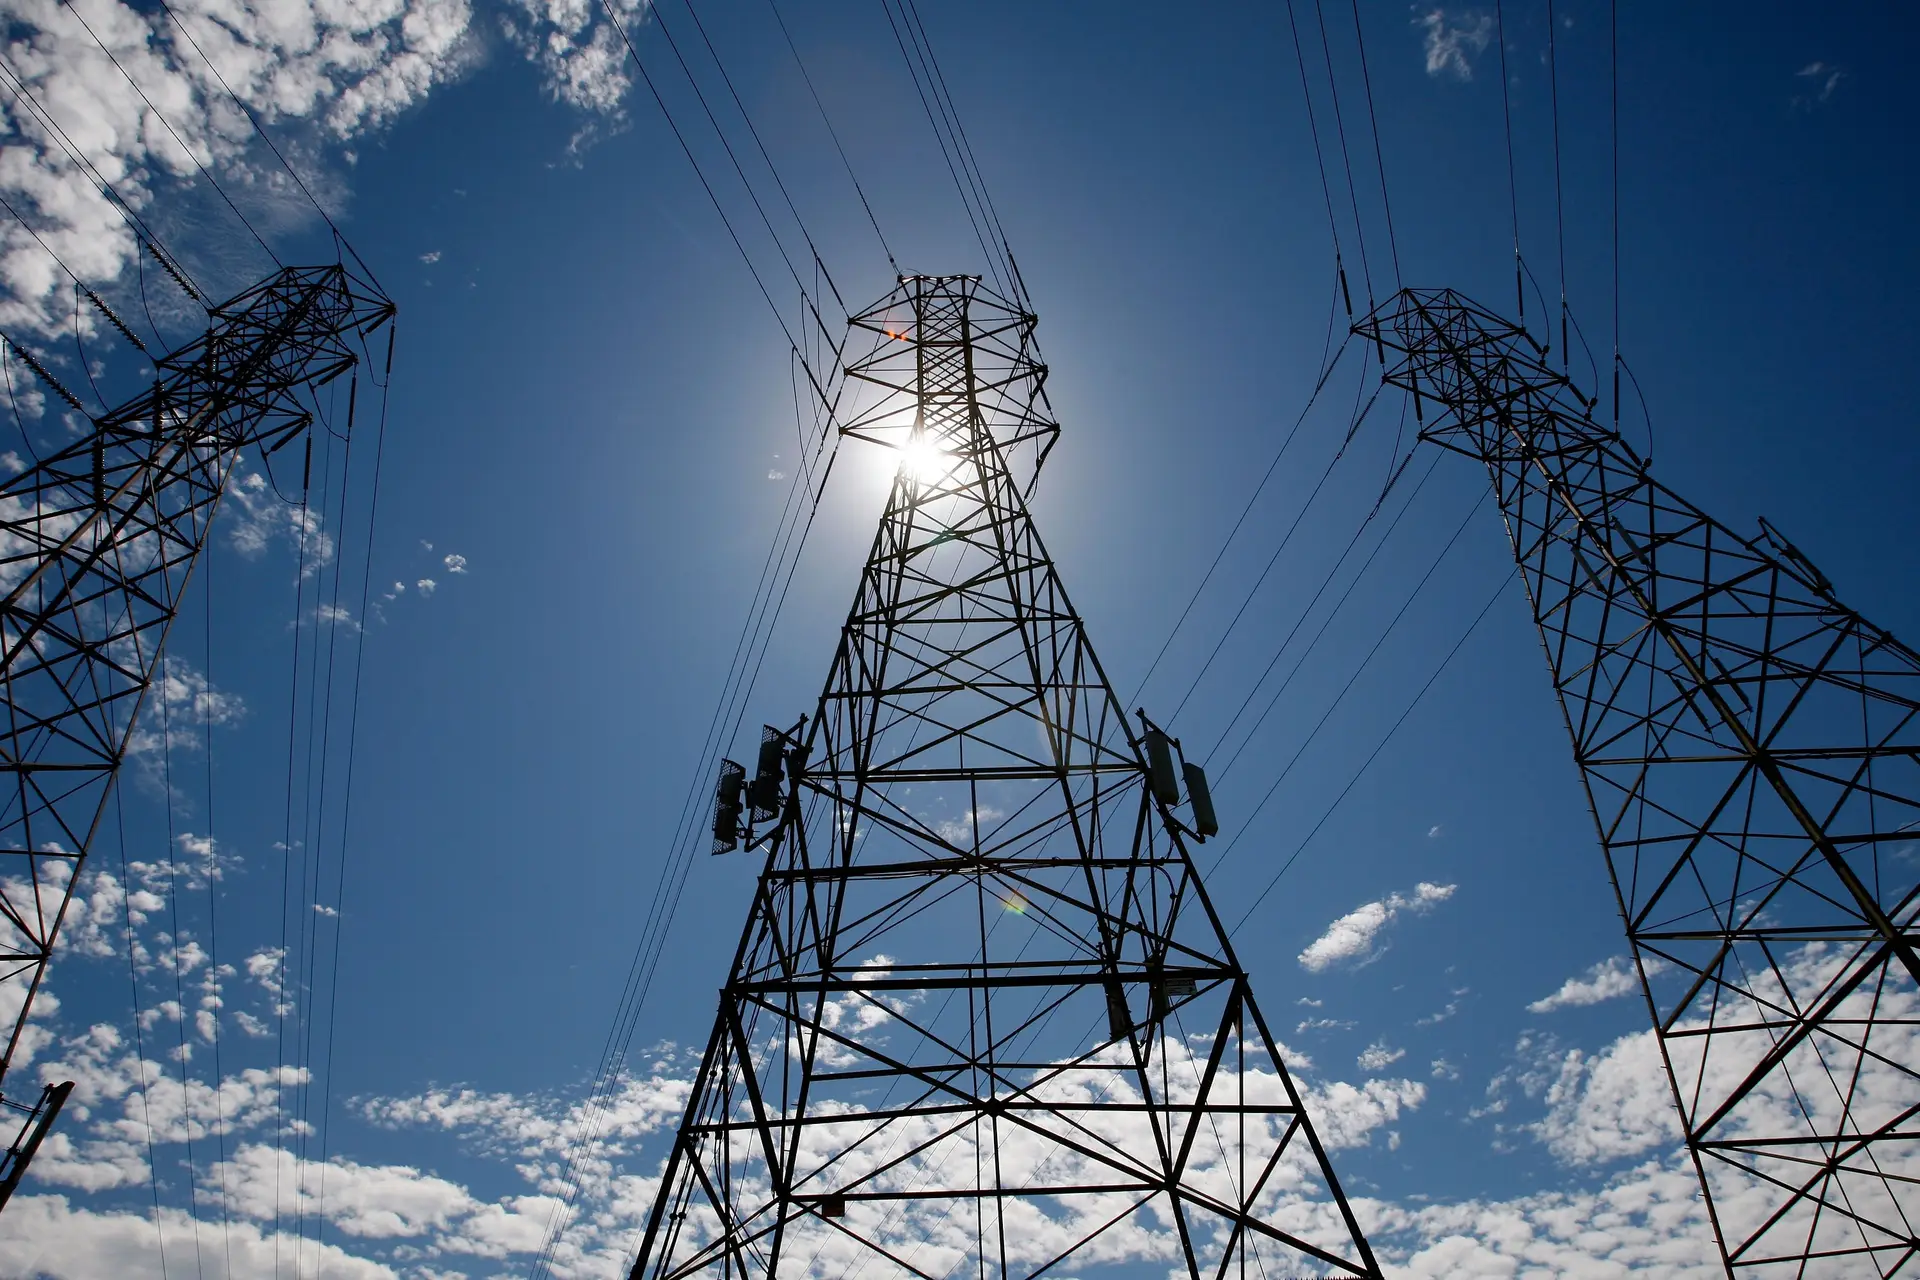 Empresas triplicam custo com energia e negam benefício com mecanismo extraordinário, aponta inquérito da AEP